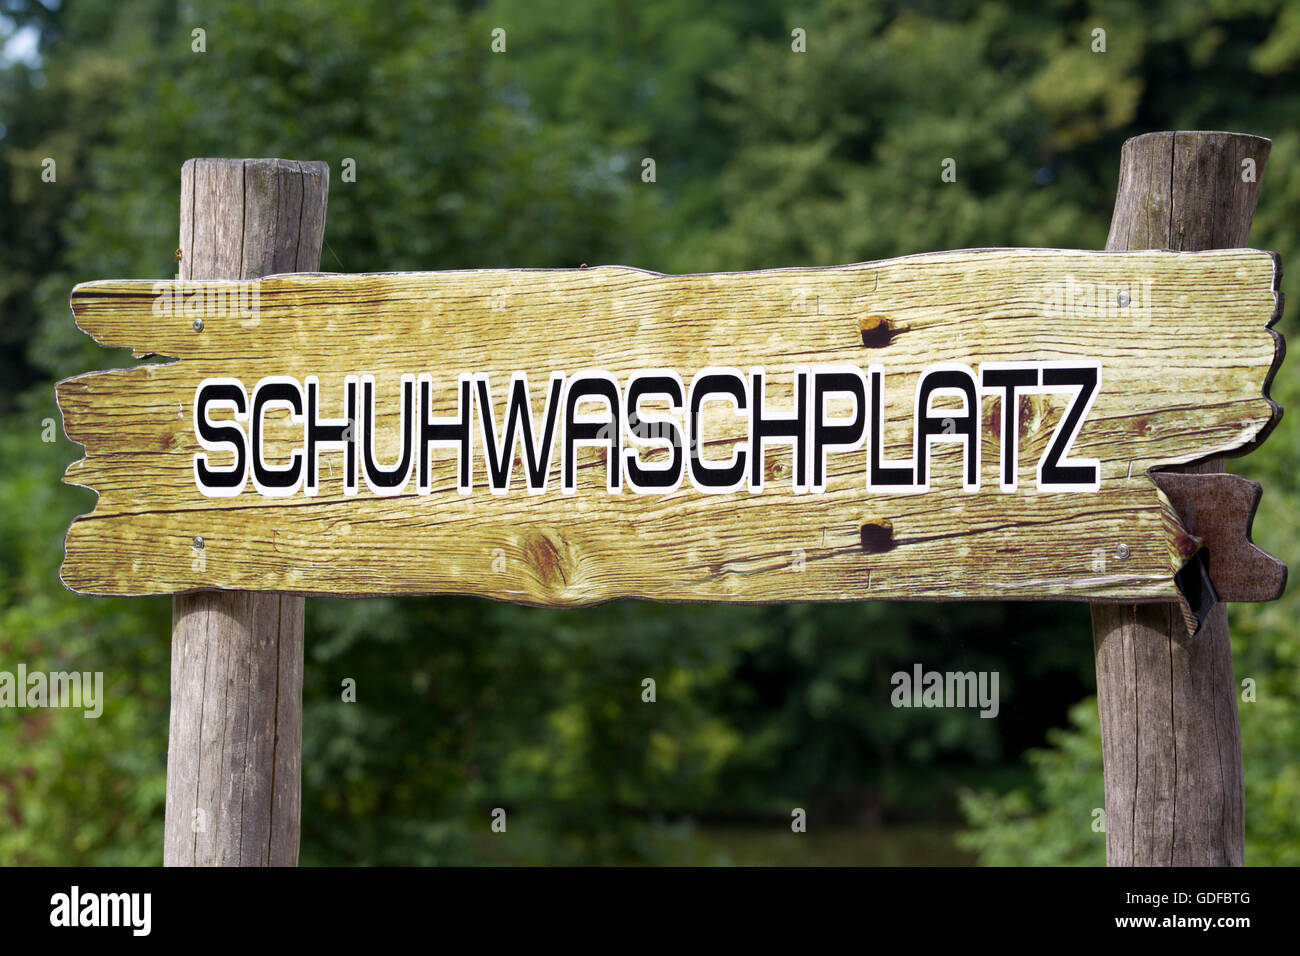 Schuhwaschplatz allemand, un endroit pour laver vos chaussures, panneau en bois à la lisière d'une forêt Banque D'Images